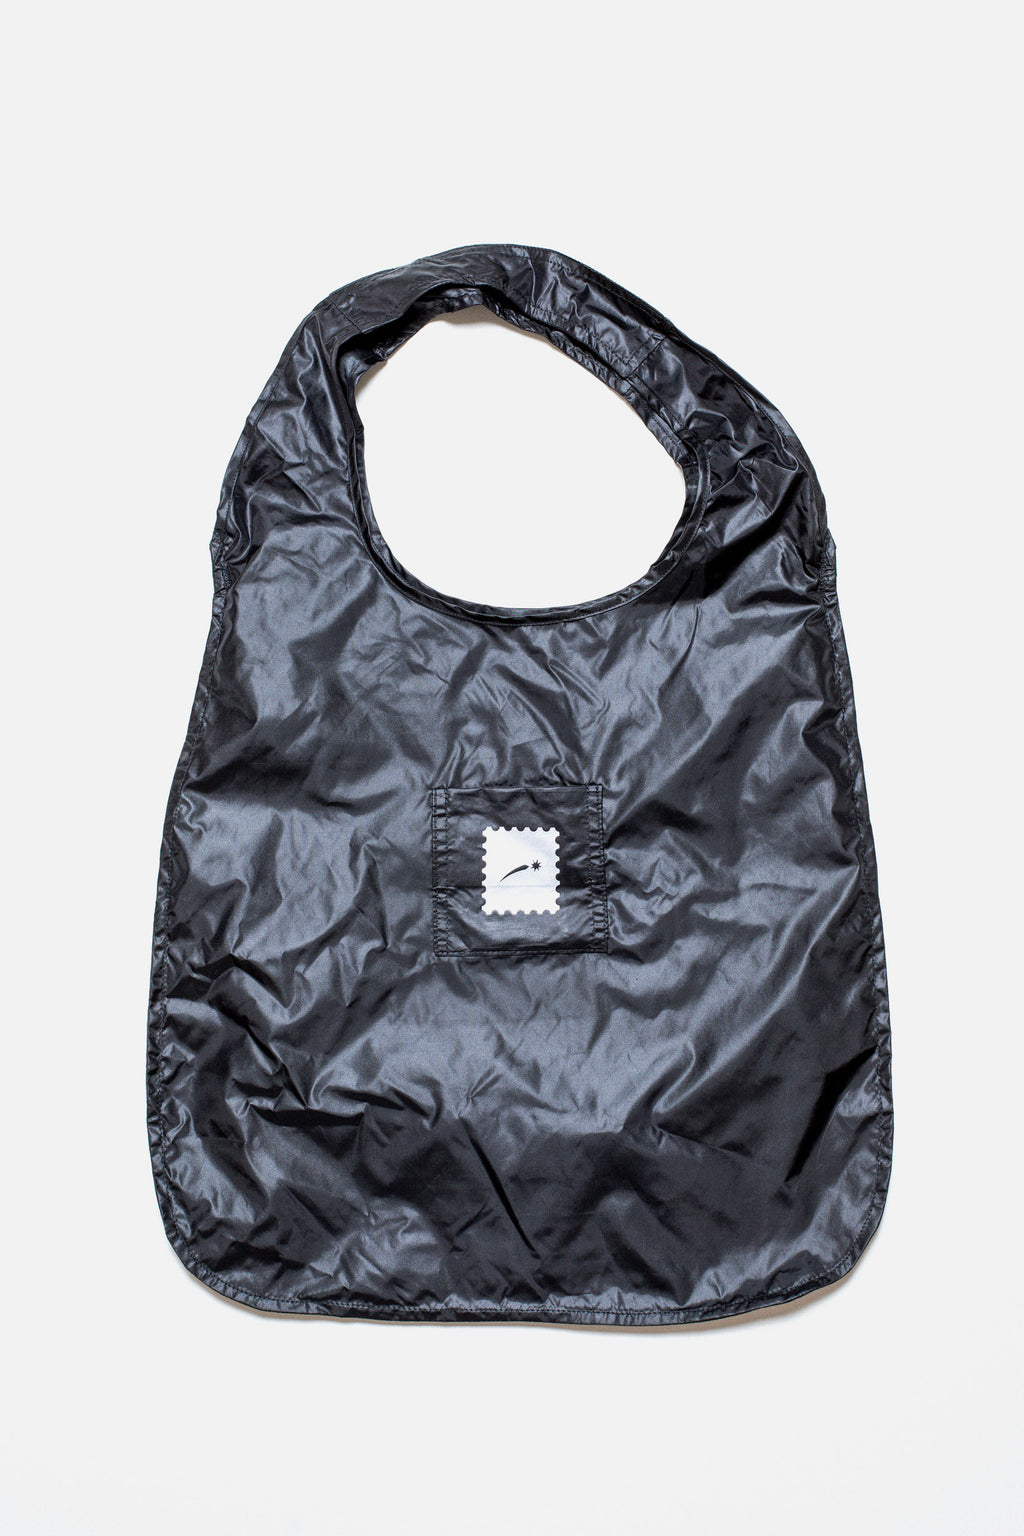 Pixie Packable Tote bag (in Black)